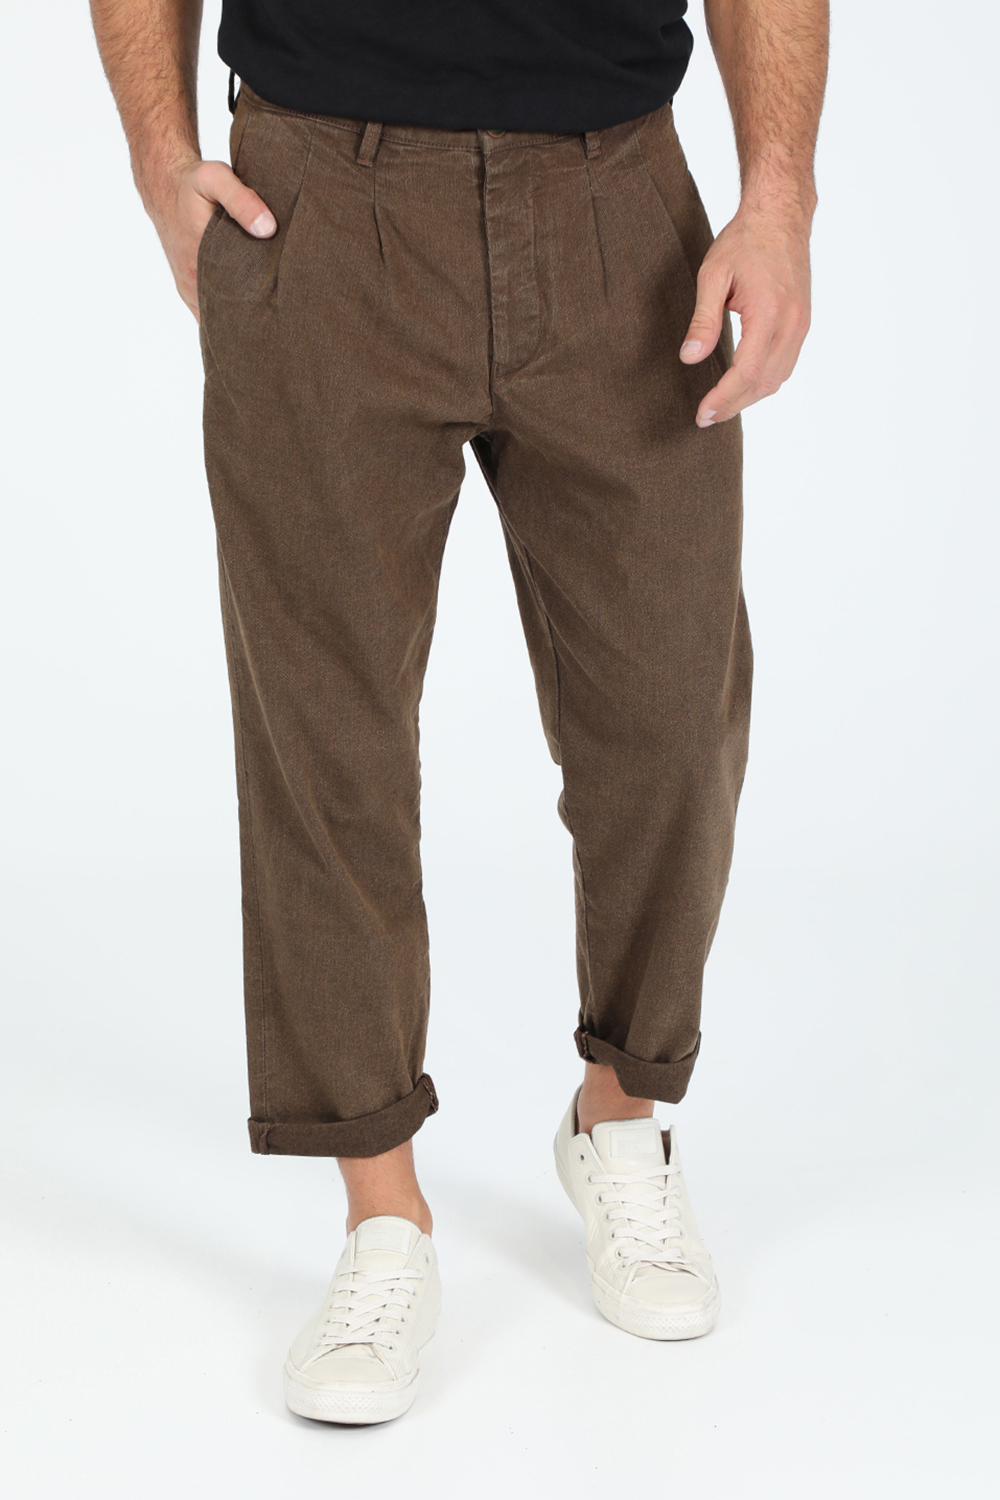 Ανδρικά/Ρούχα/Παντελόνια/Φαρδιά Γραμμή GABBA - Ανδρικό jean παντελόνι GABBA Firenze K4146 καφέ